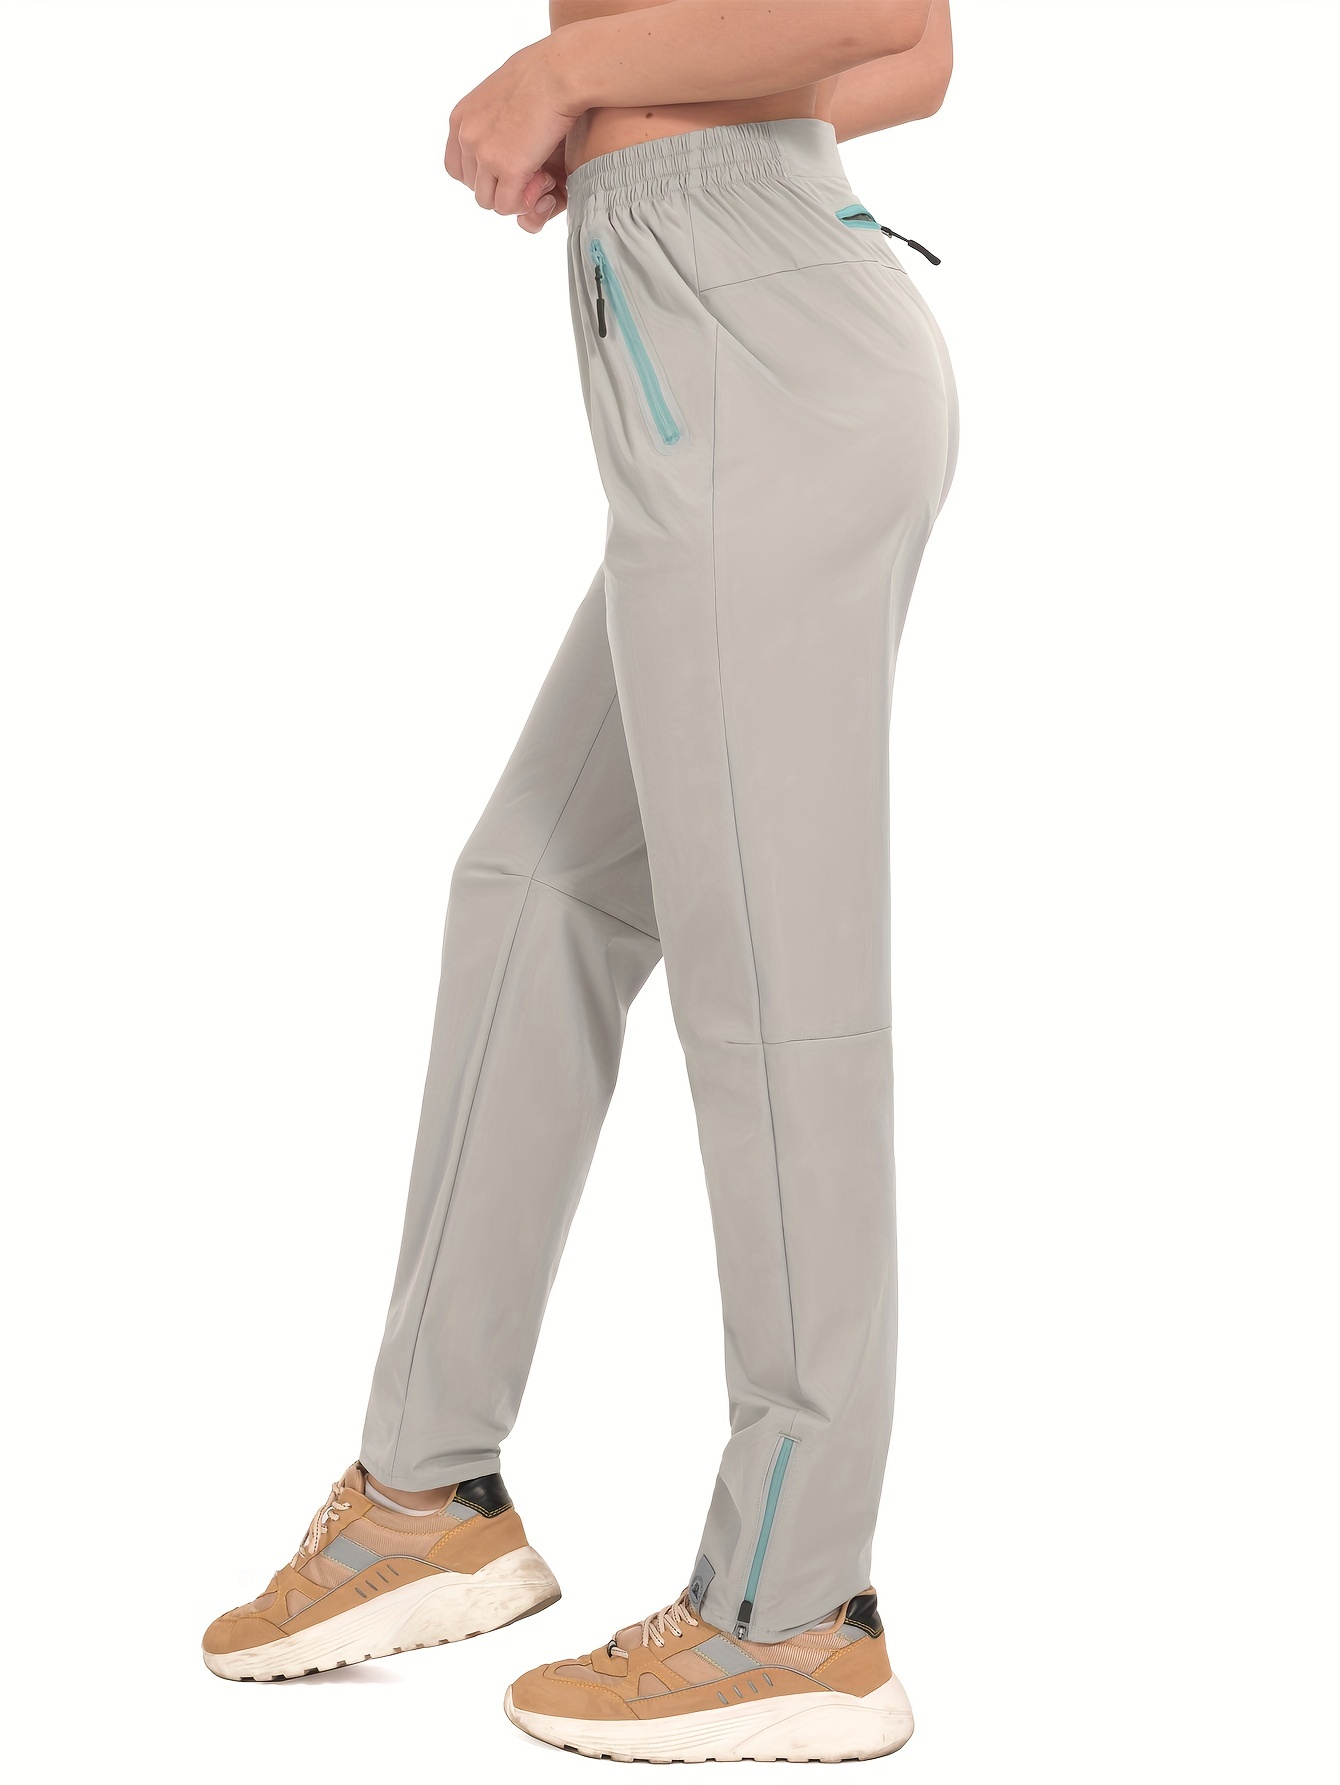 G Gradual - Pantalones de mujer con bolsillos profundos, largo de 7/8,  elásticos, hasta el tobillo, para golf, atletismo, descanso, viajes, trabajo